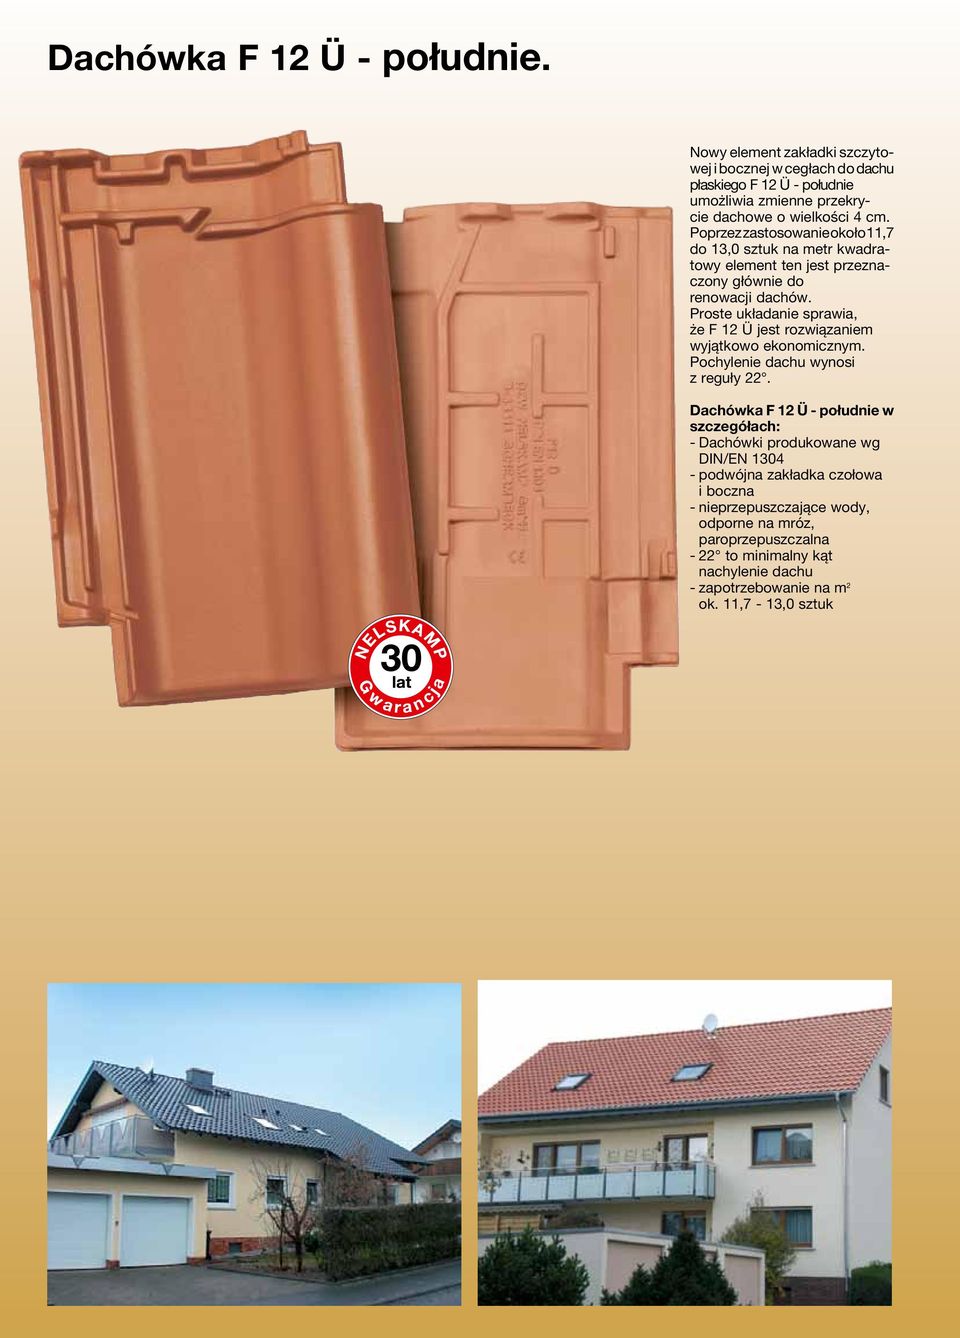 Poprzez zastosowanie około 11,7 do 13,0 sztuk na metr kwadratowy element ten jest przeznaczony głównie do renowacji dachów.